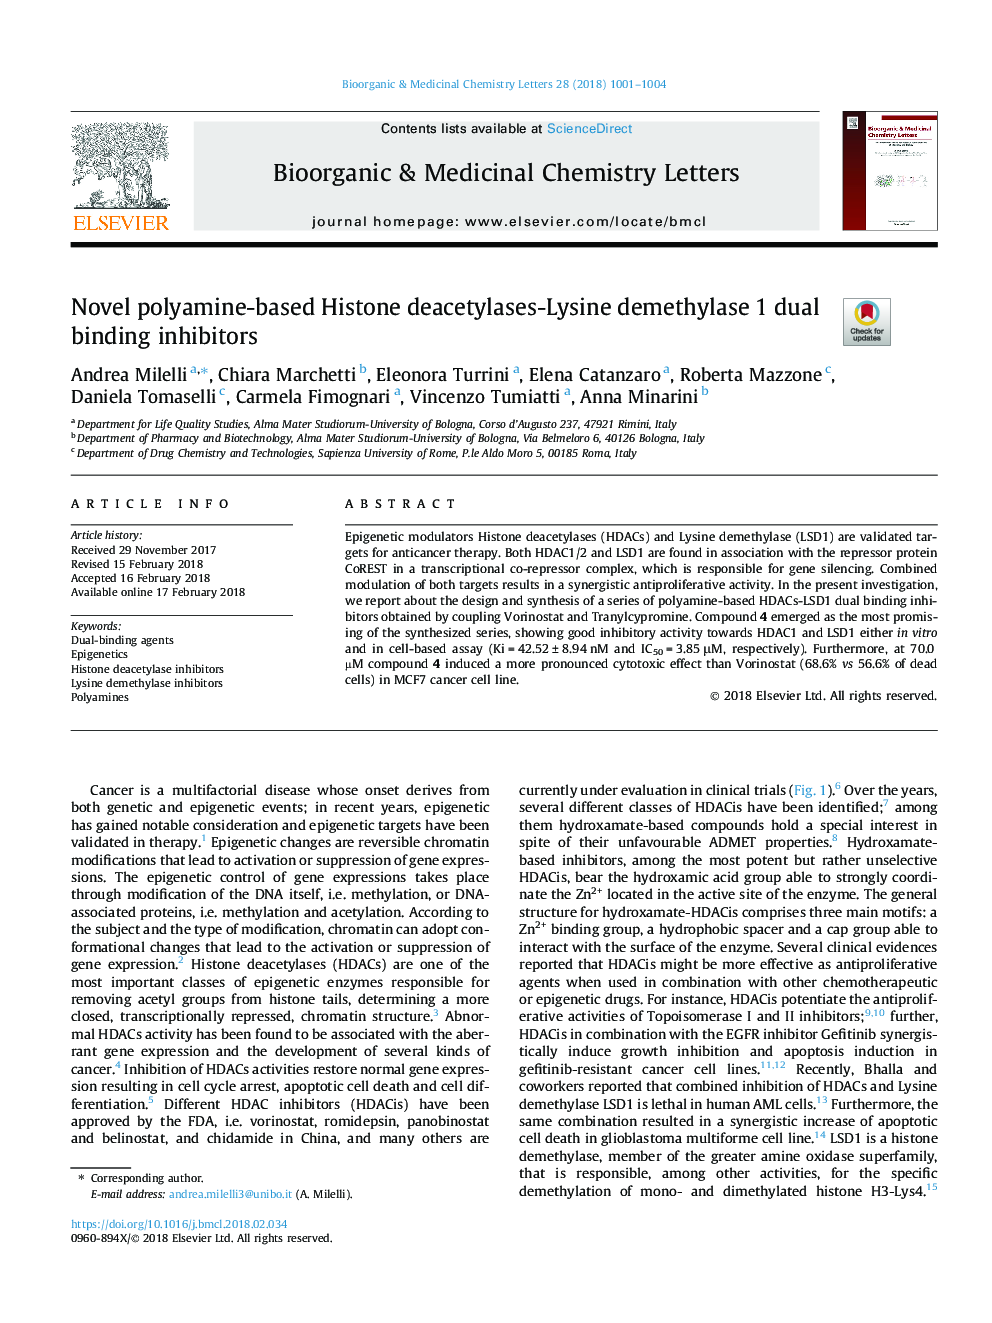 هیستون دیازتیلاس-لیزین دیمیلااز 1 و مهار کننده های اتصال دوگانه مبتنی بر پلی آمین 